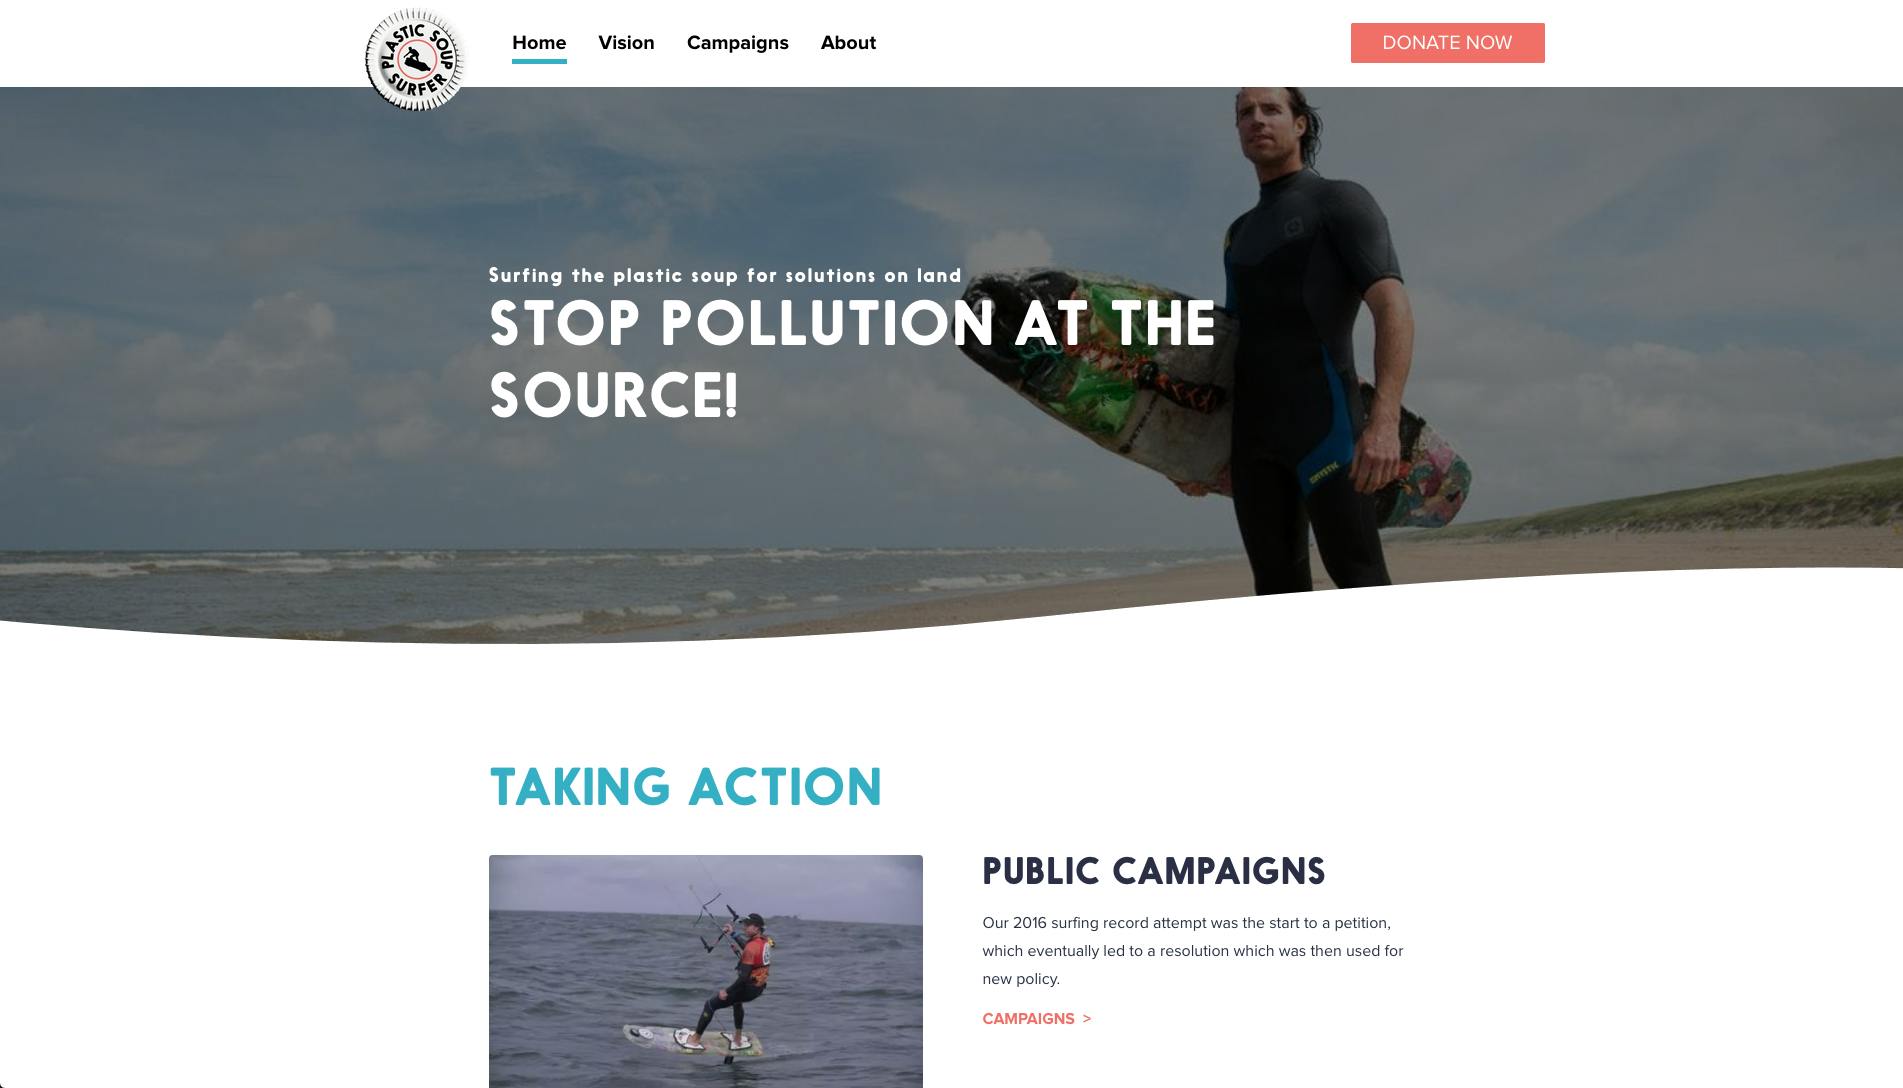 Campagnewebsite voor de Plastic Soup Surfer